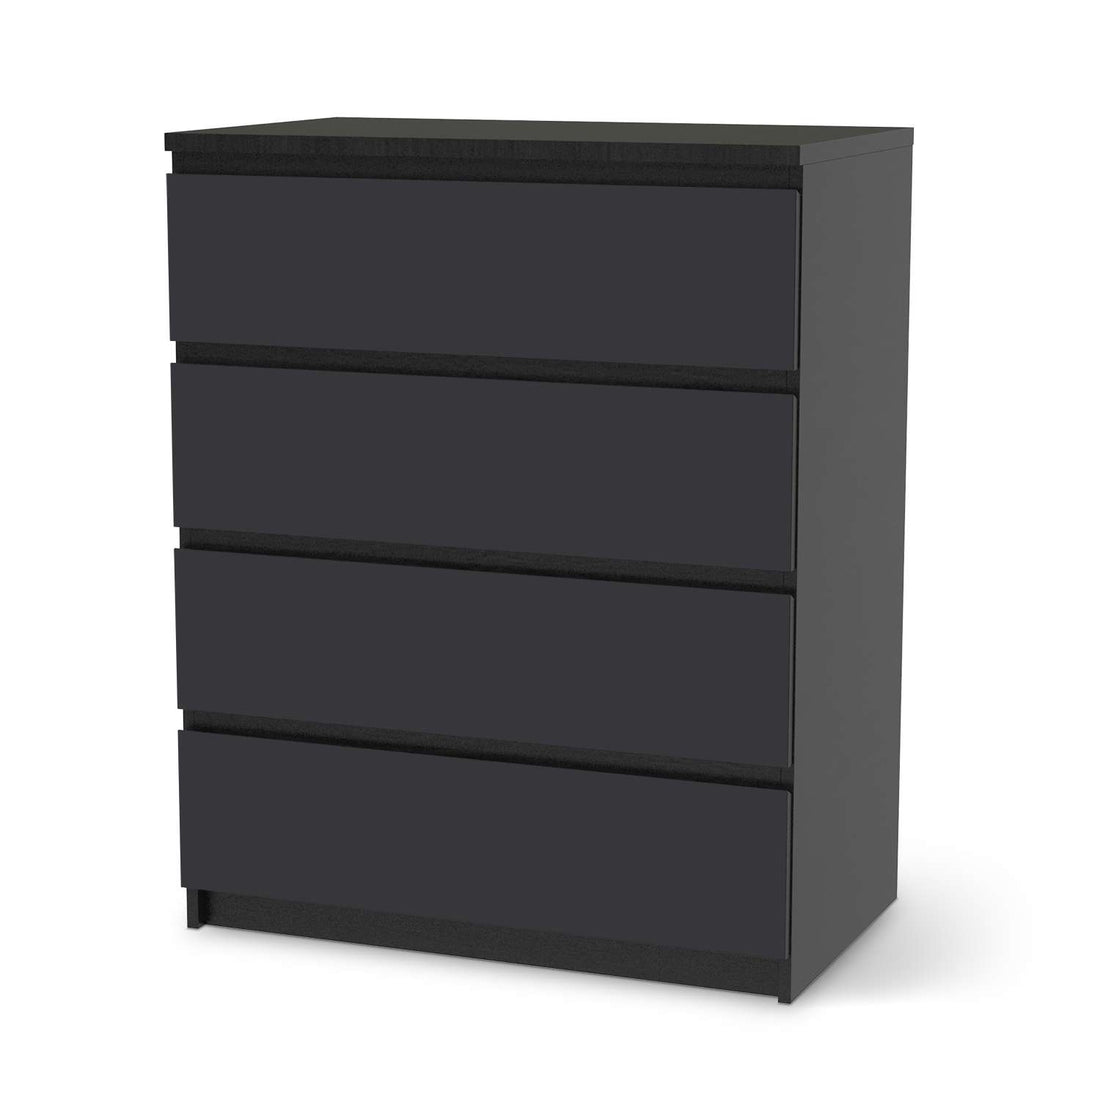 Folie für Möbel Grau Dark - IKEA Malm Kommode 4 Schubladen - schwarz